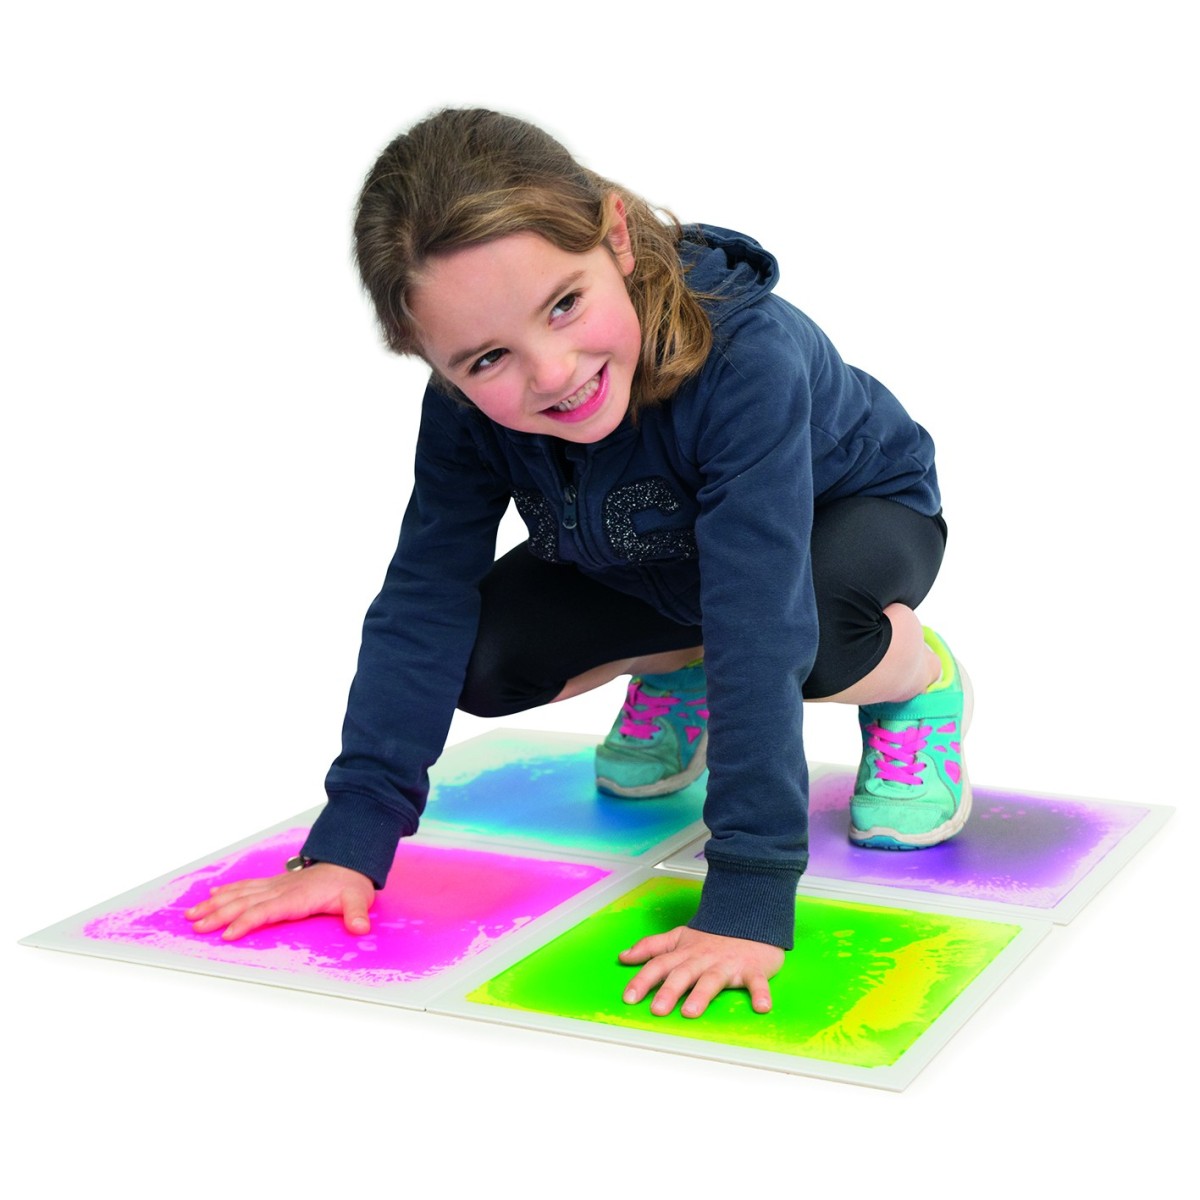 Lot de 4 dalles sensori-motrices multicolores pour les jeux de motricité en couleurs des enfants